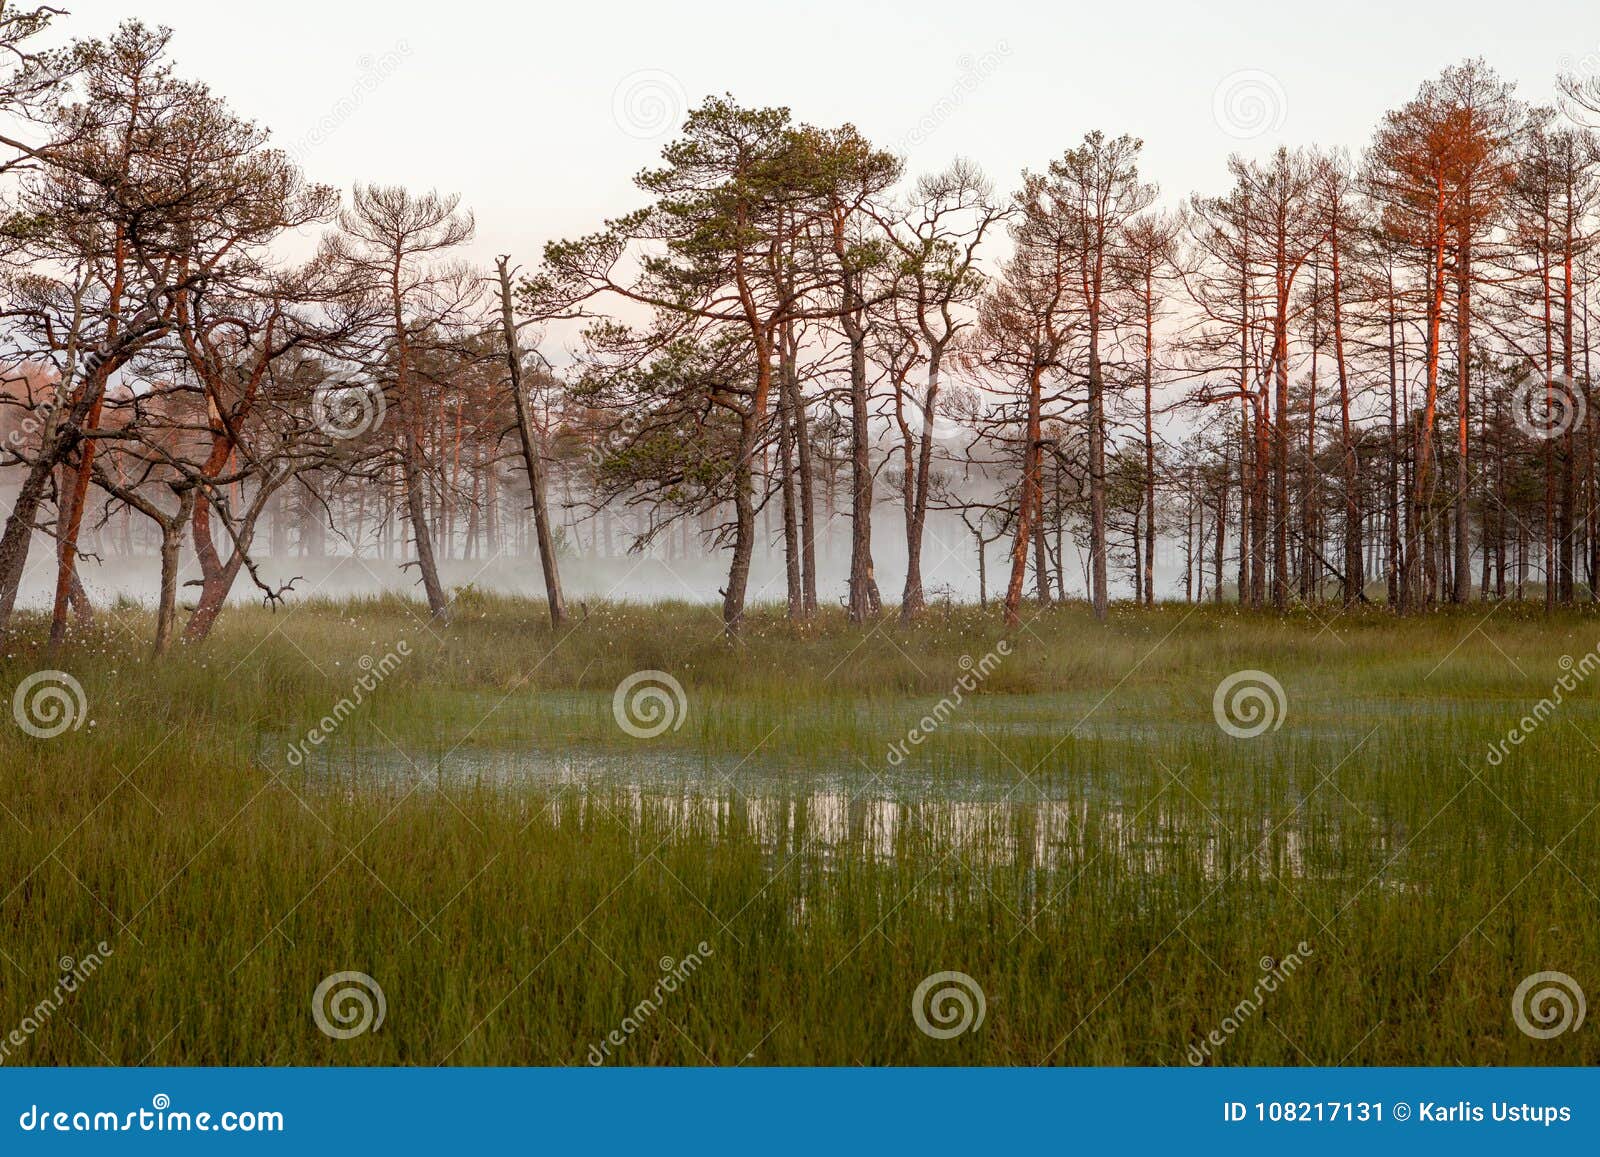 misty bog landscape in cena moorland, latvia